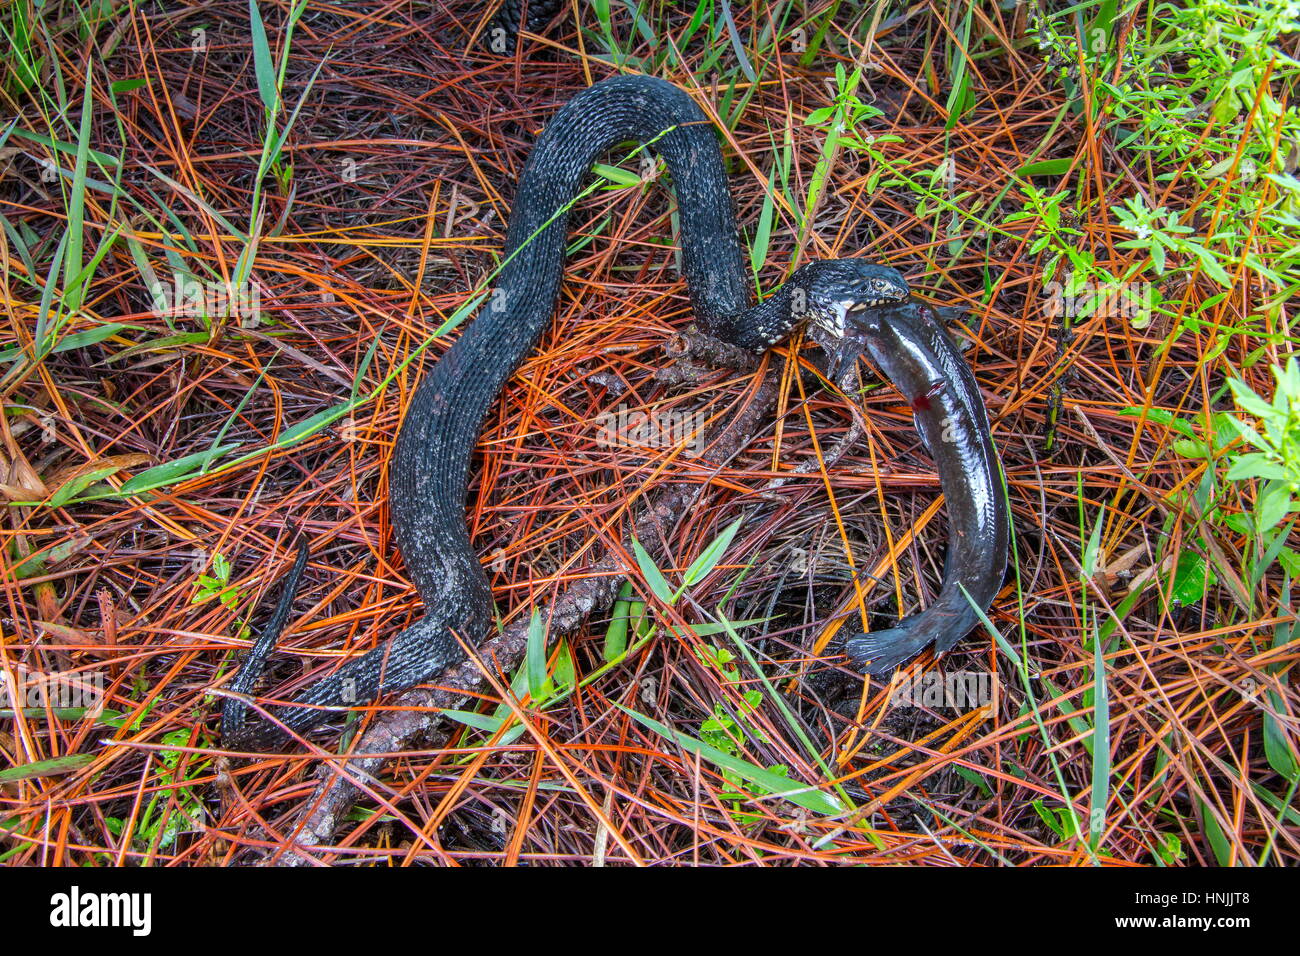 Un serpent d'eau de Floride, Nerodia faciata, avalant un poisson-chat, marche batrachus Clarius. Banque D'Images